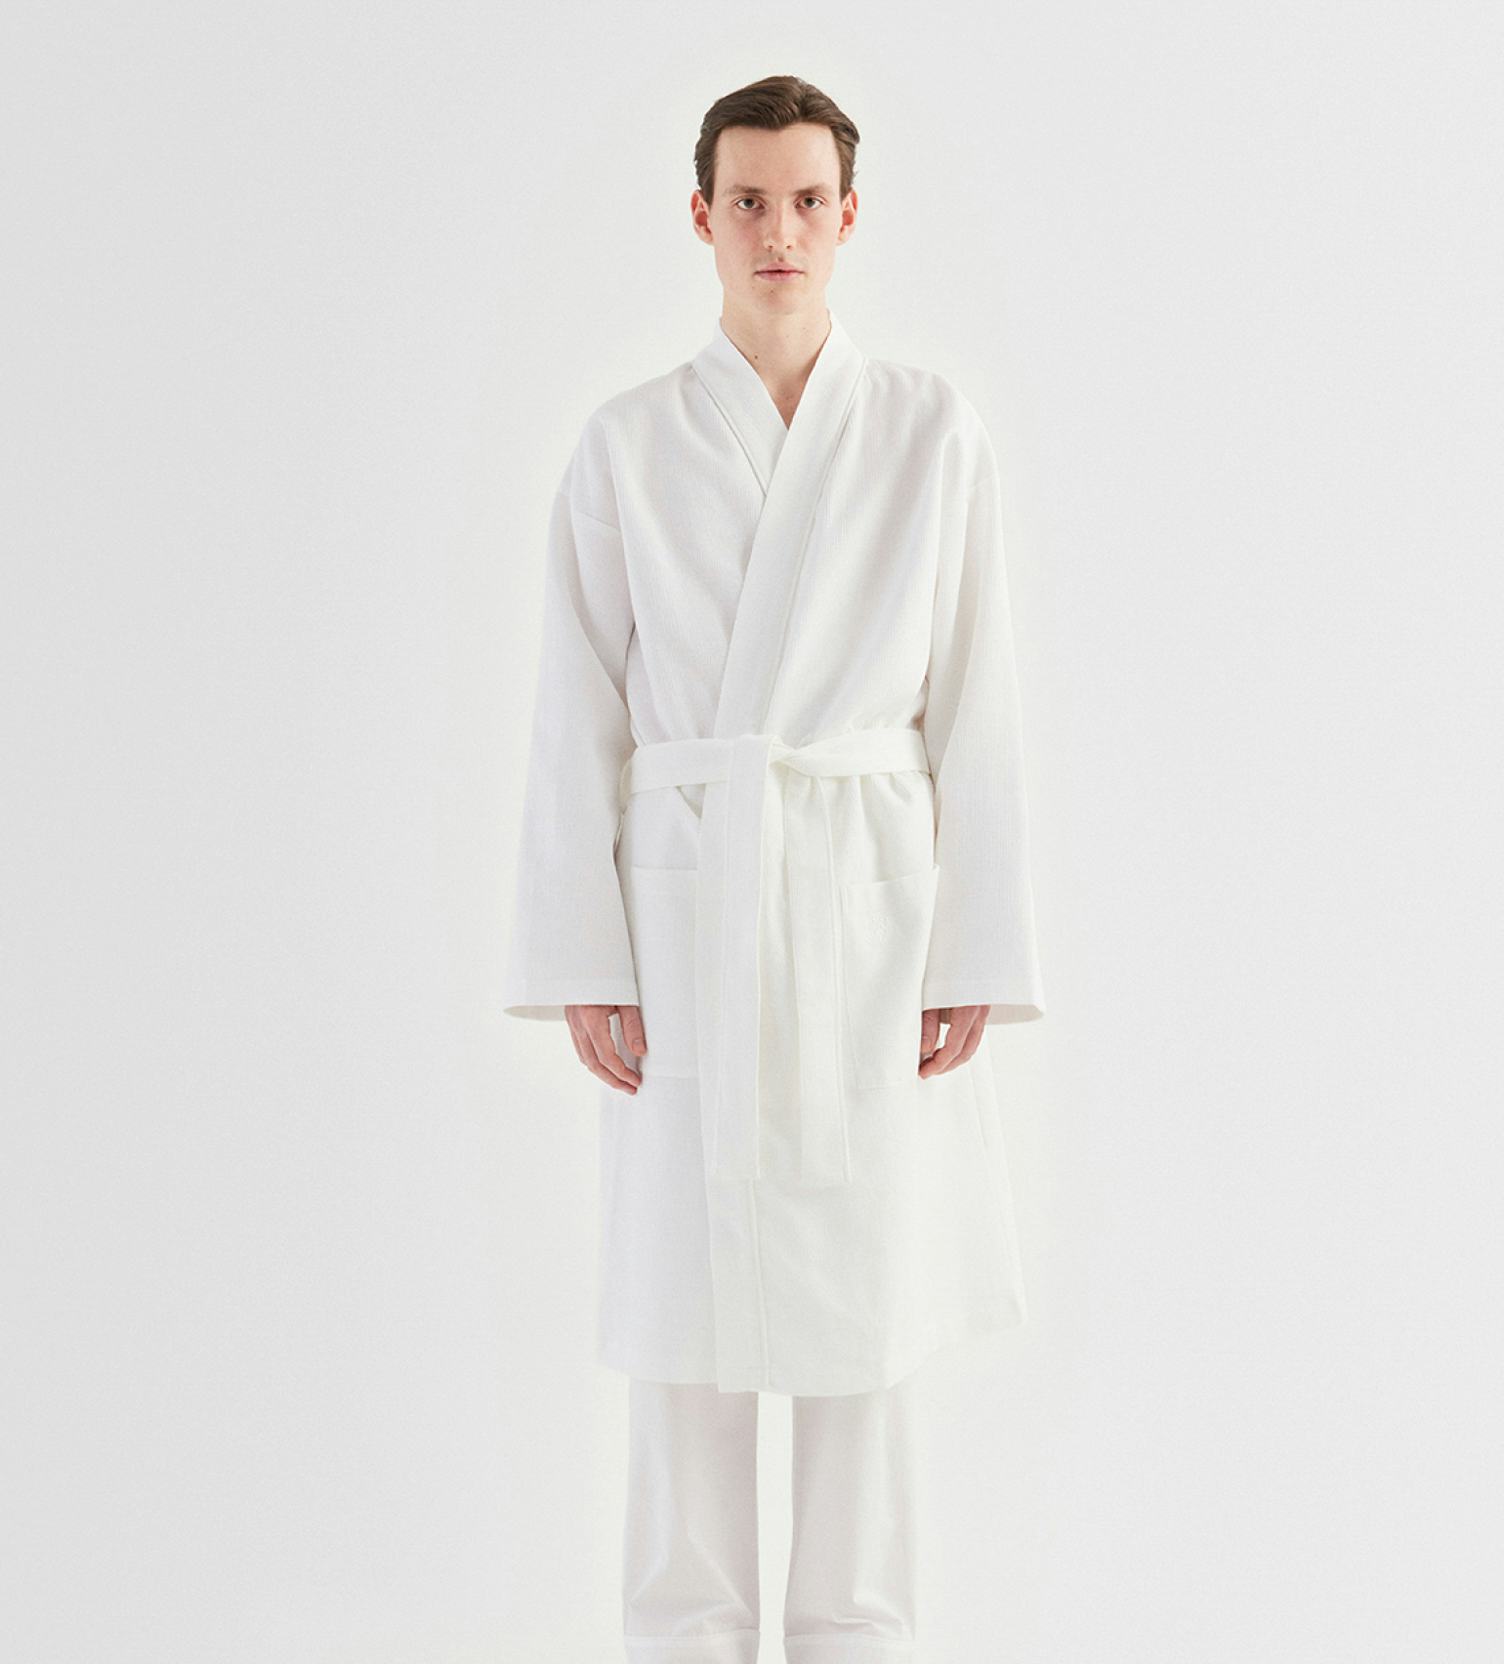 Diplomat ur pålidelighed Varm hvid kimono med let for i frotté. Ren luksus fra Georg Jensen Damask